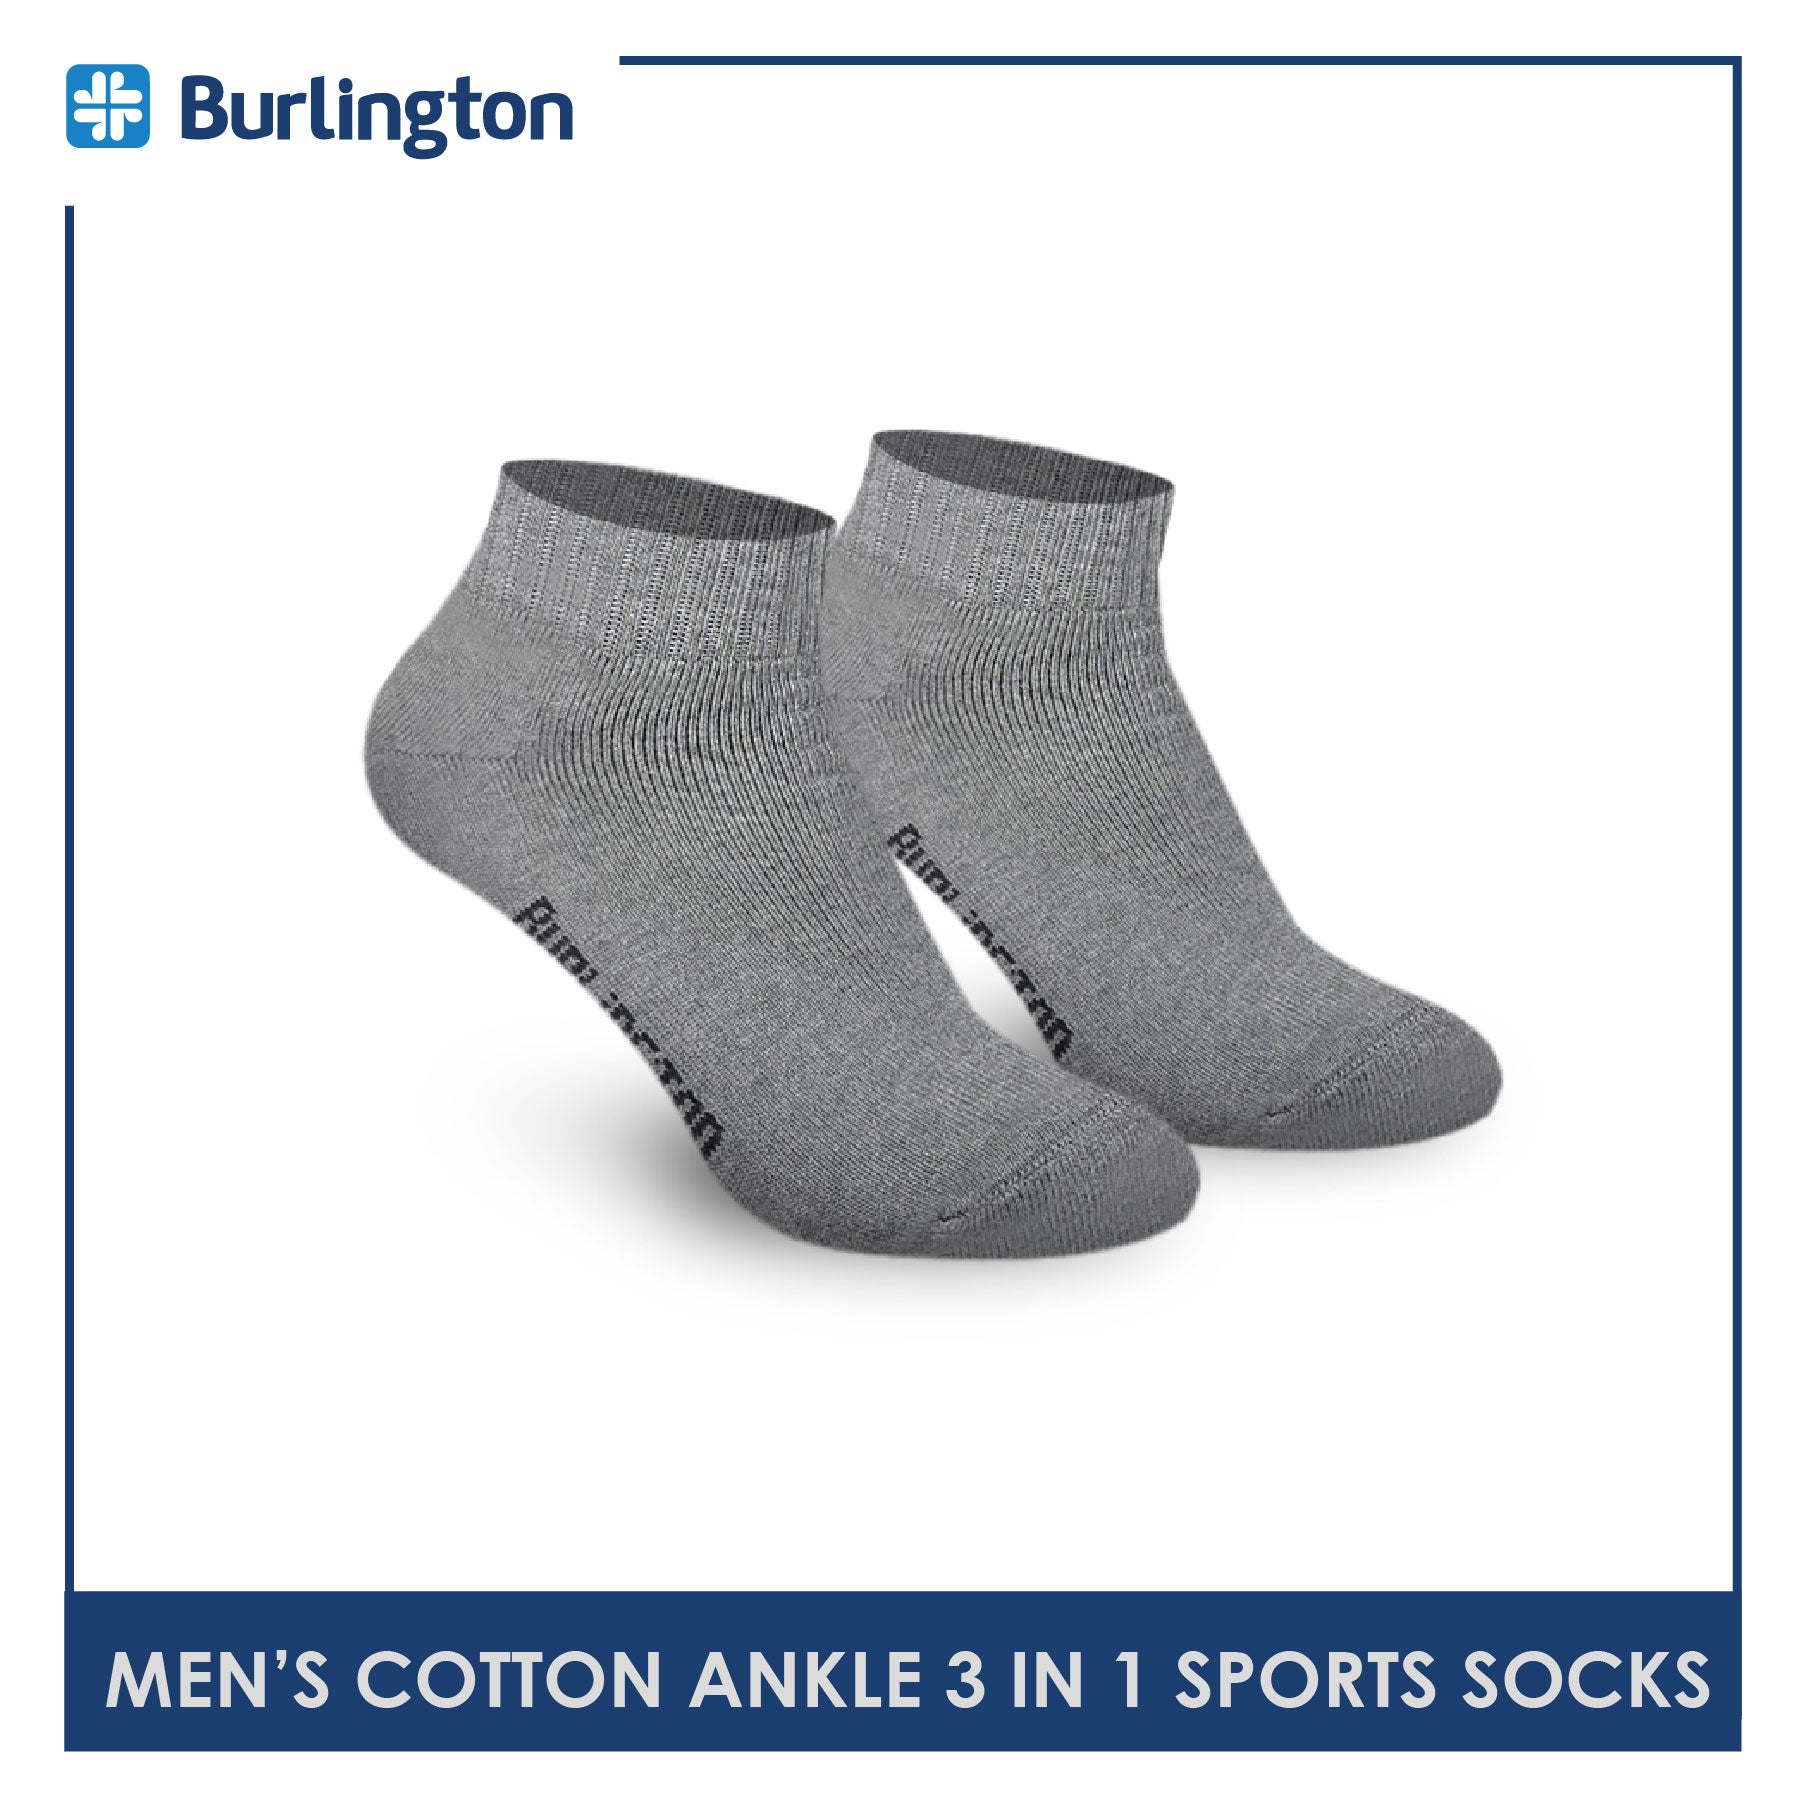 Men's Thick Ankle Socks Color: Black White Gray